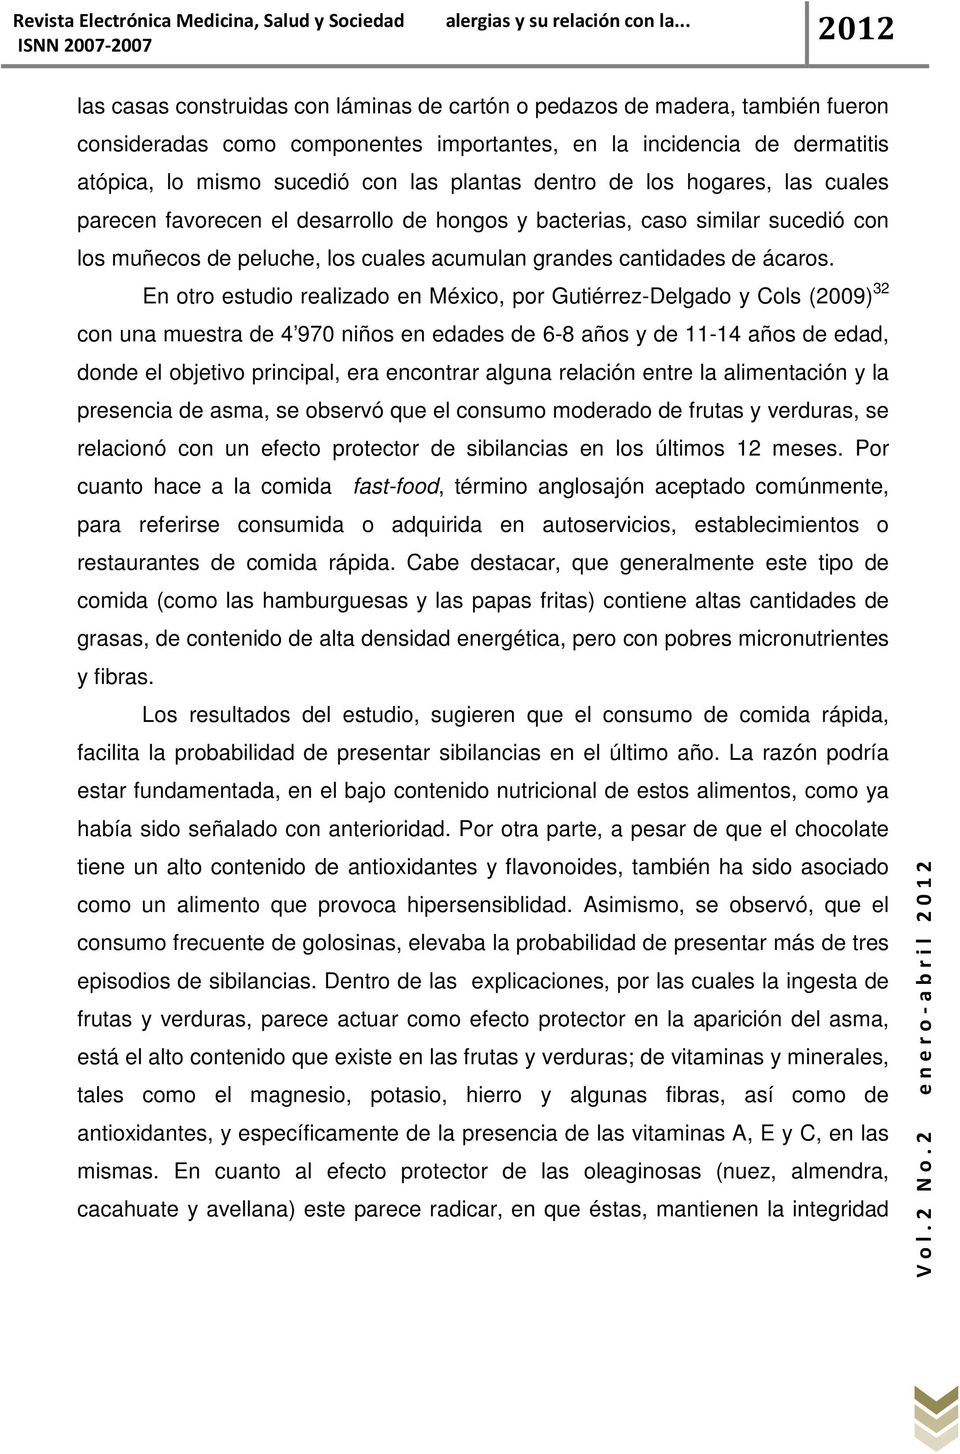 En otro estudio realizado en México, por Gutiérrez-Delgado y Cols (2009) 32 con una muestra de 4 970 niños en edades de 6-8 años y de 11-14 años de edad, donde el objetivo principal, era encontrar